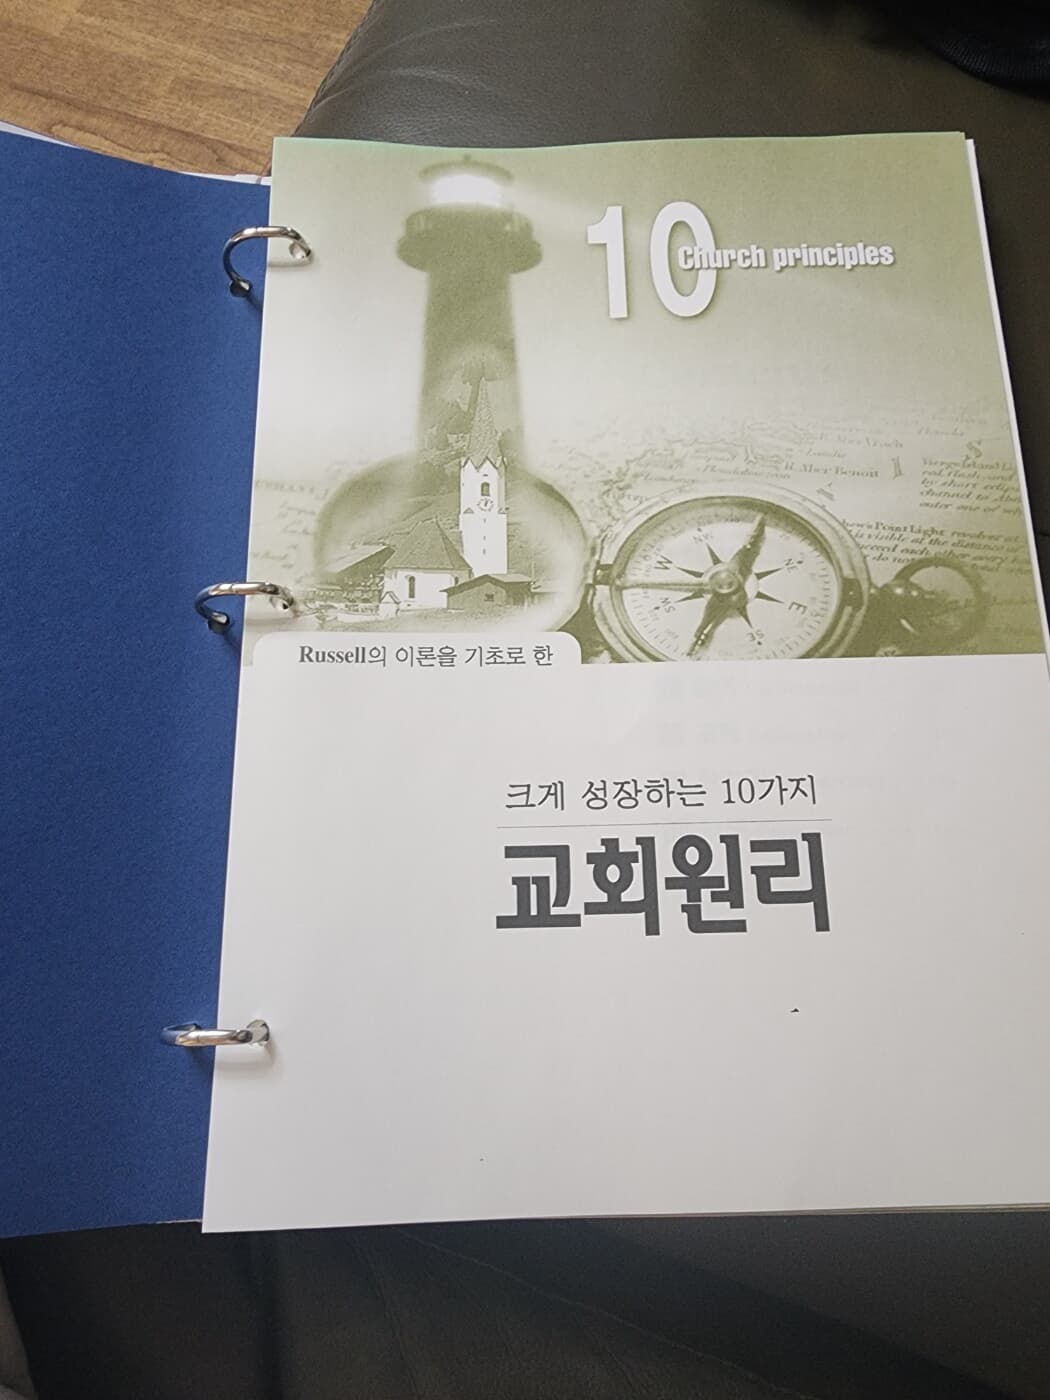 크게 성장하는 10가지 교회원리 김두현 21C목회연구소